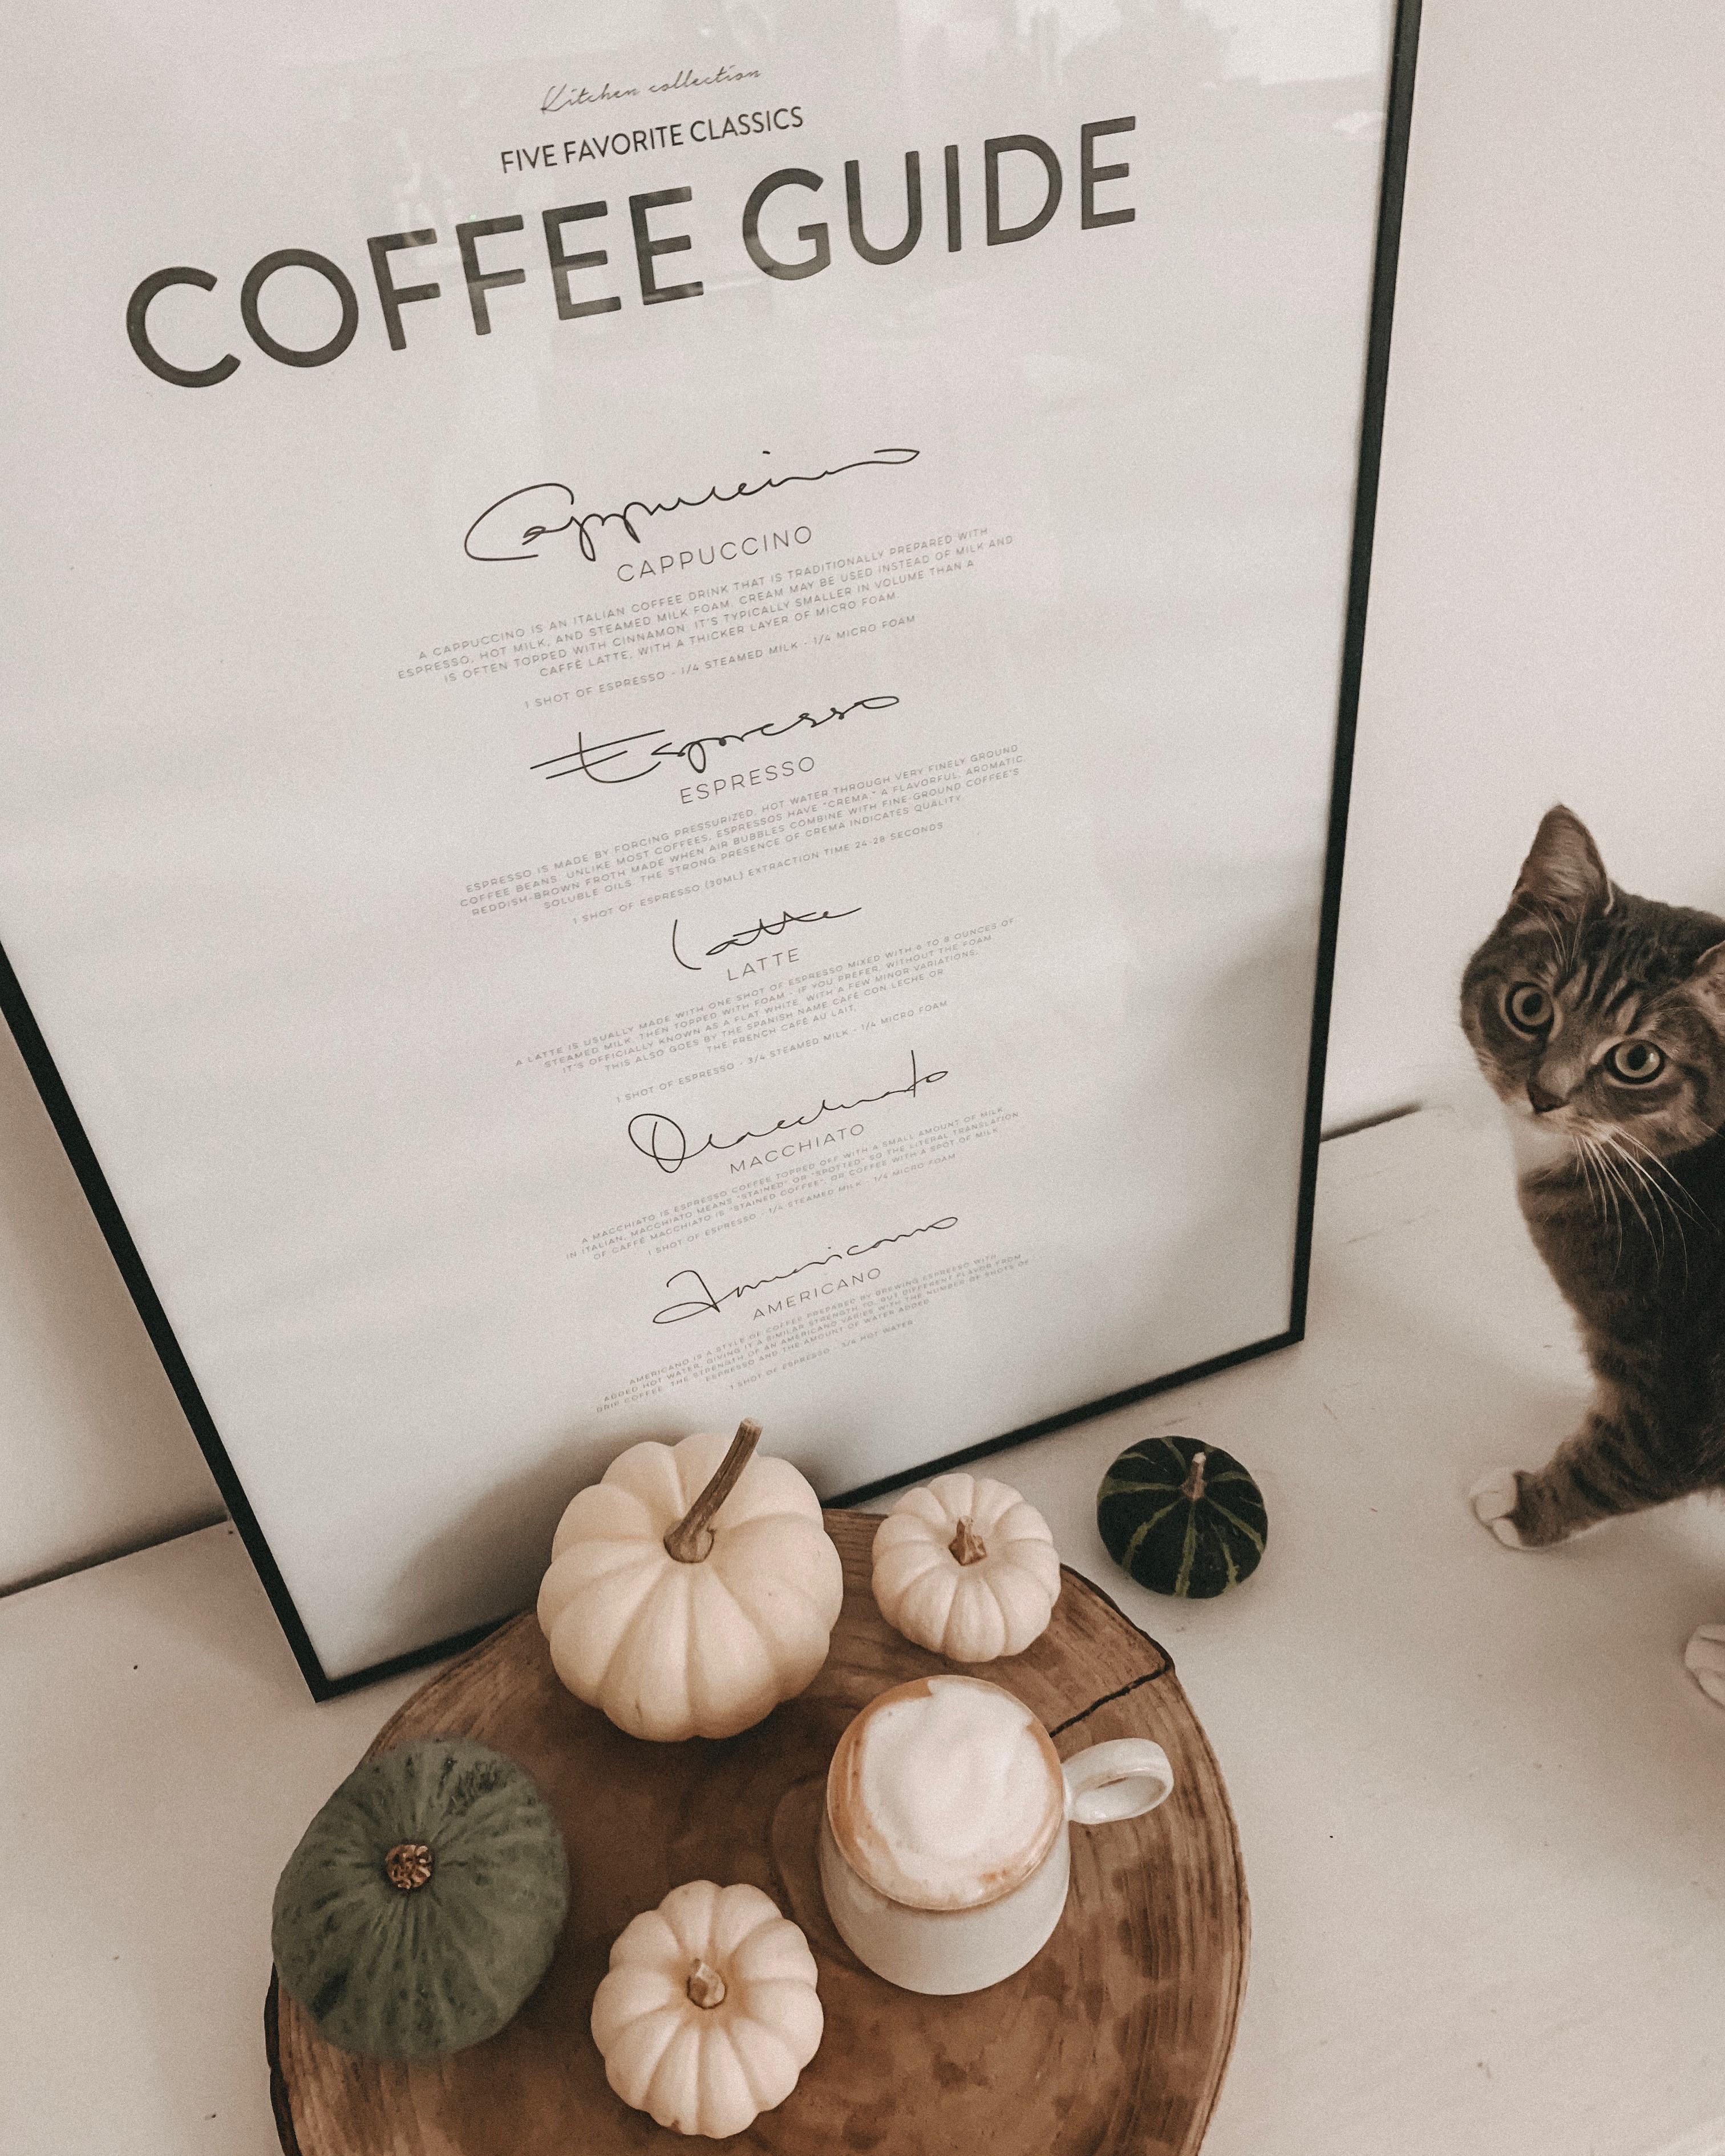 Coffee Guide ☕️ Balu hat sich mal wieder ins Bild geschlichen

#coffeelover #coffee #cat 